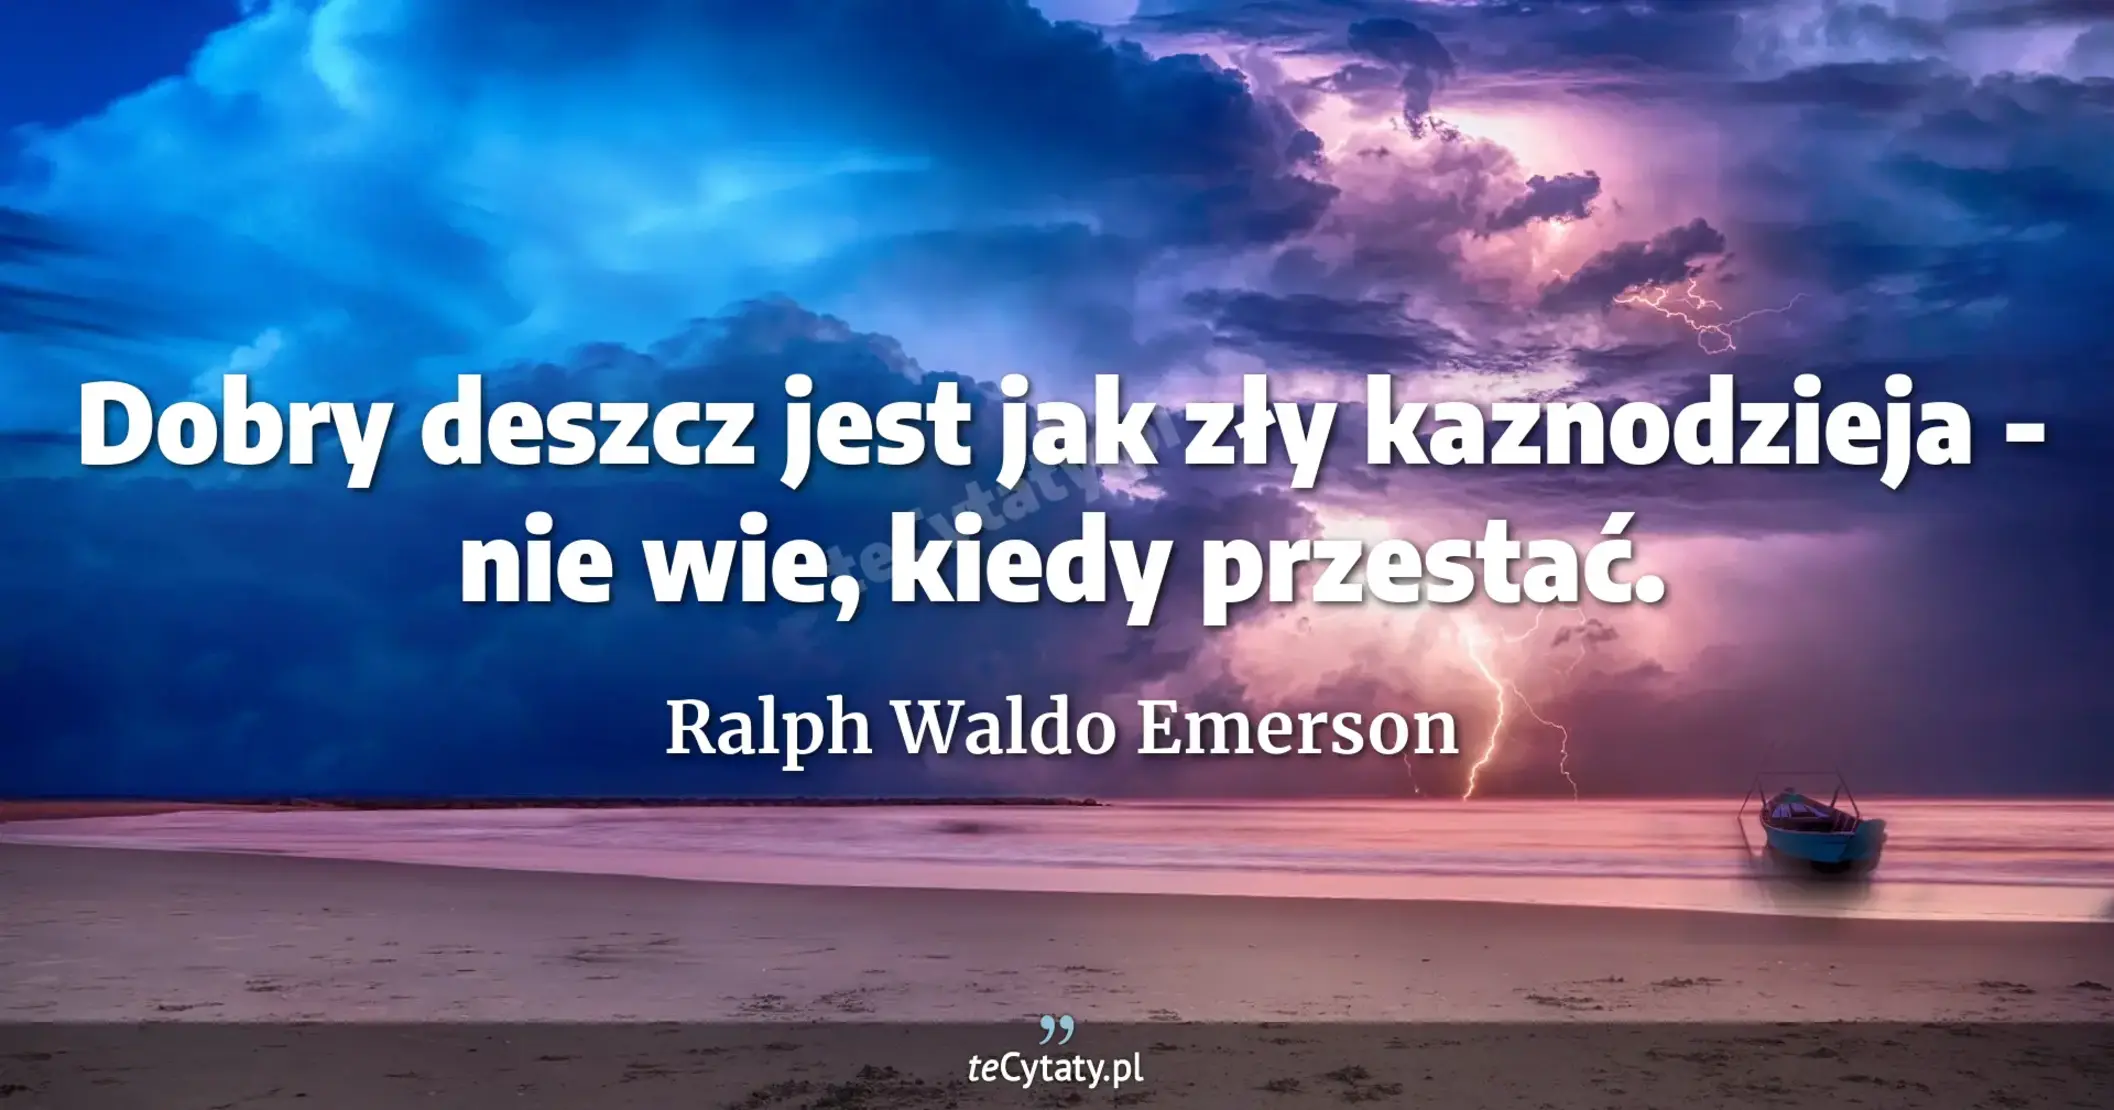 Dobry deszcz jest jak zły kaznodzieja - nie wie, kiedy przestać. - Ralph Waldo Emerson